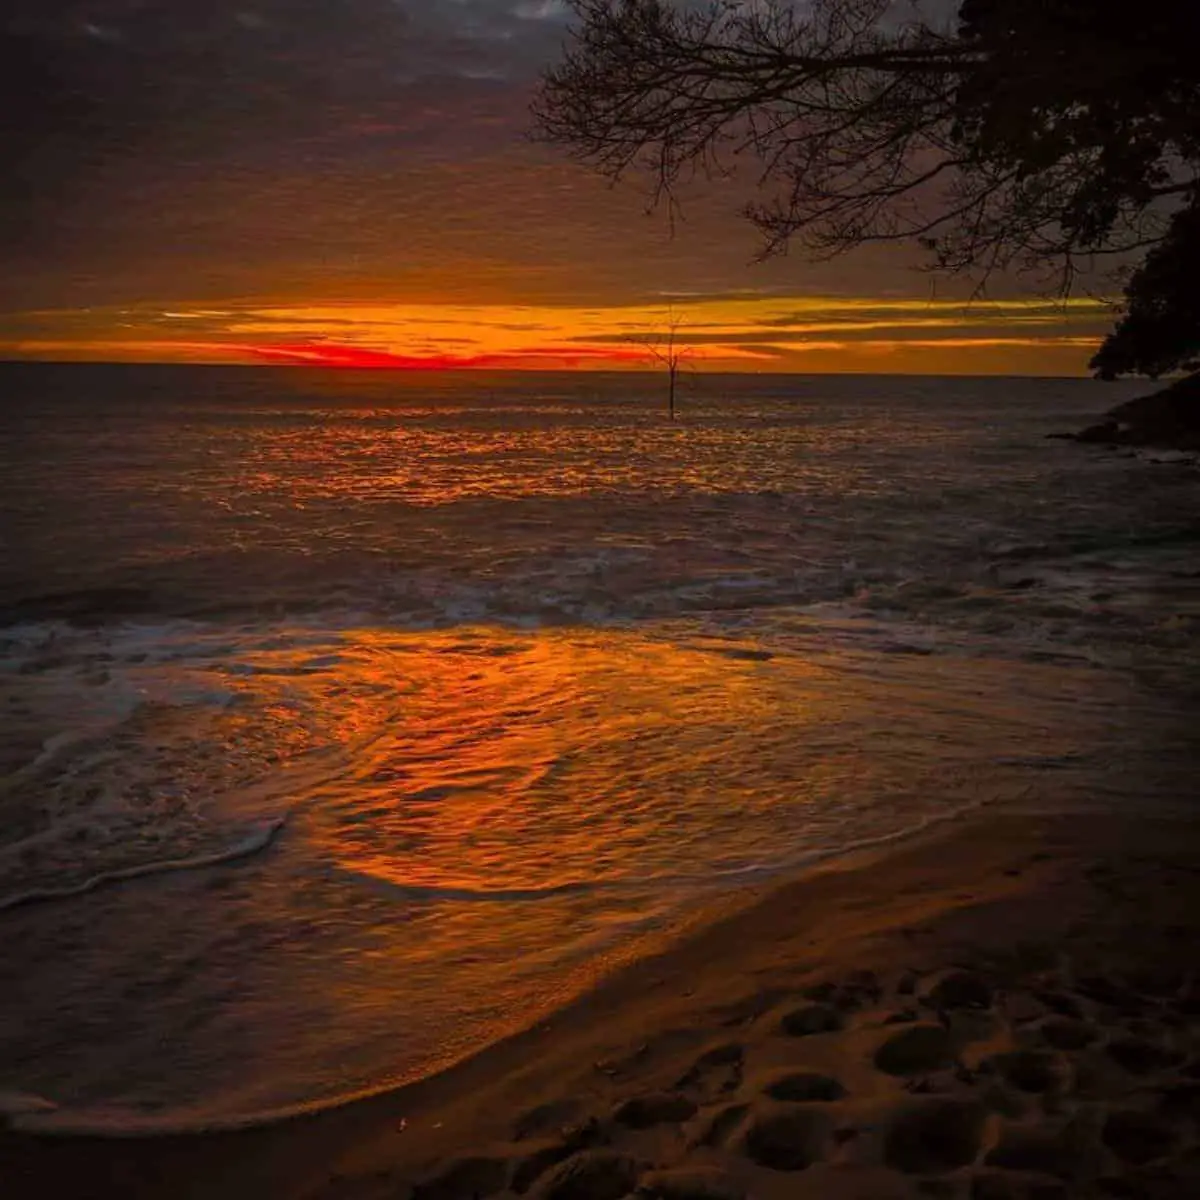 Pantai Pasir Panjang Long Sand Beach sunset view